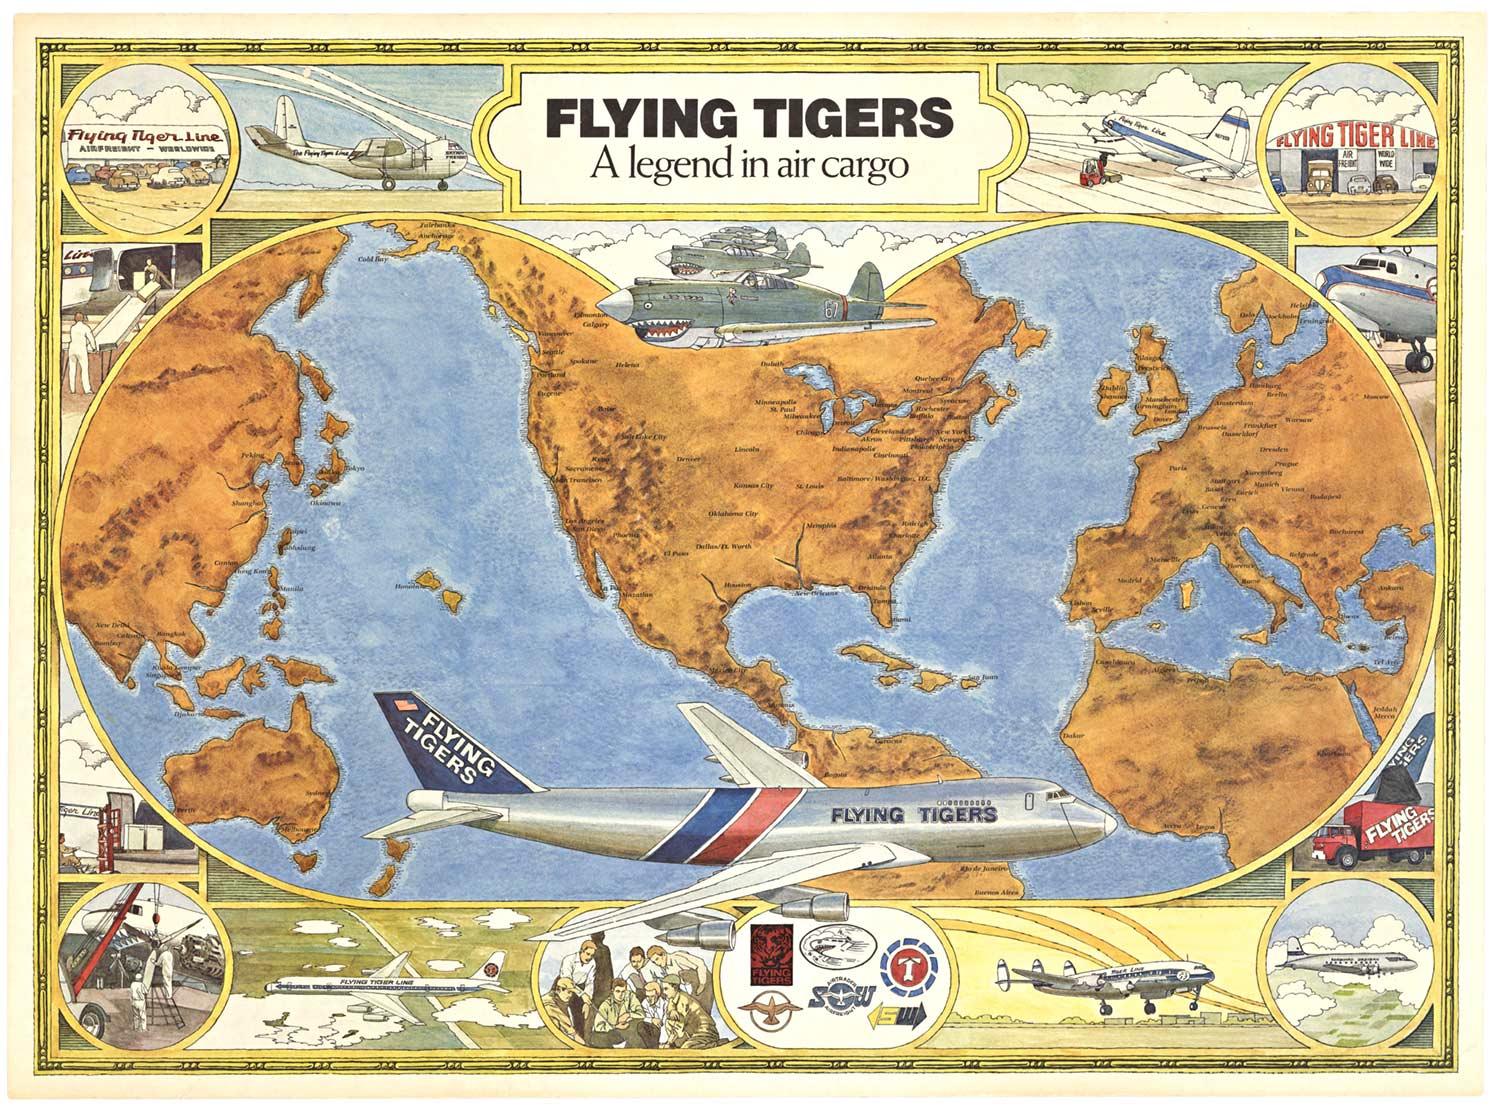 Vintage-Poster „Flying Tigers“ von der Fluggesellschaft.   Eine Legende in Air Cargo